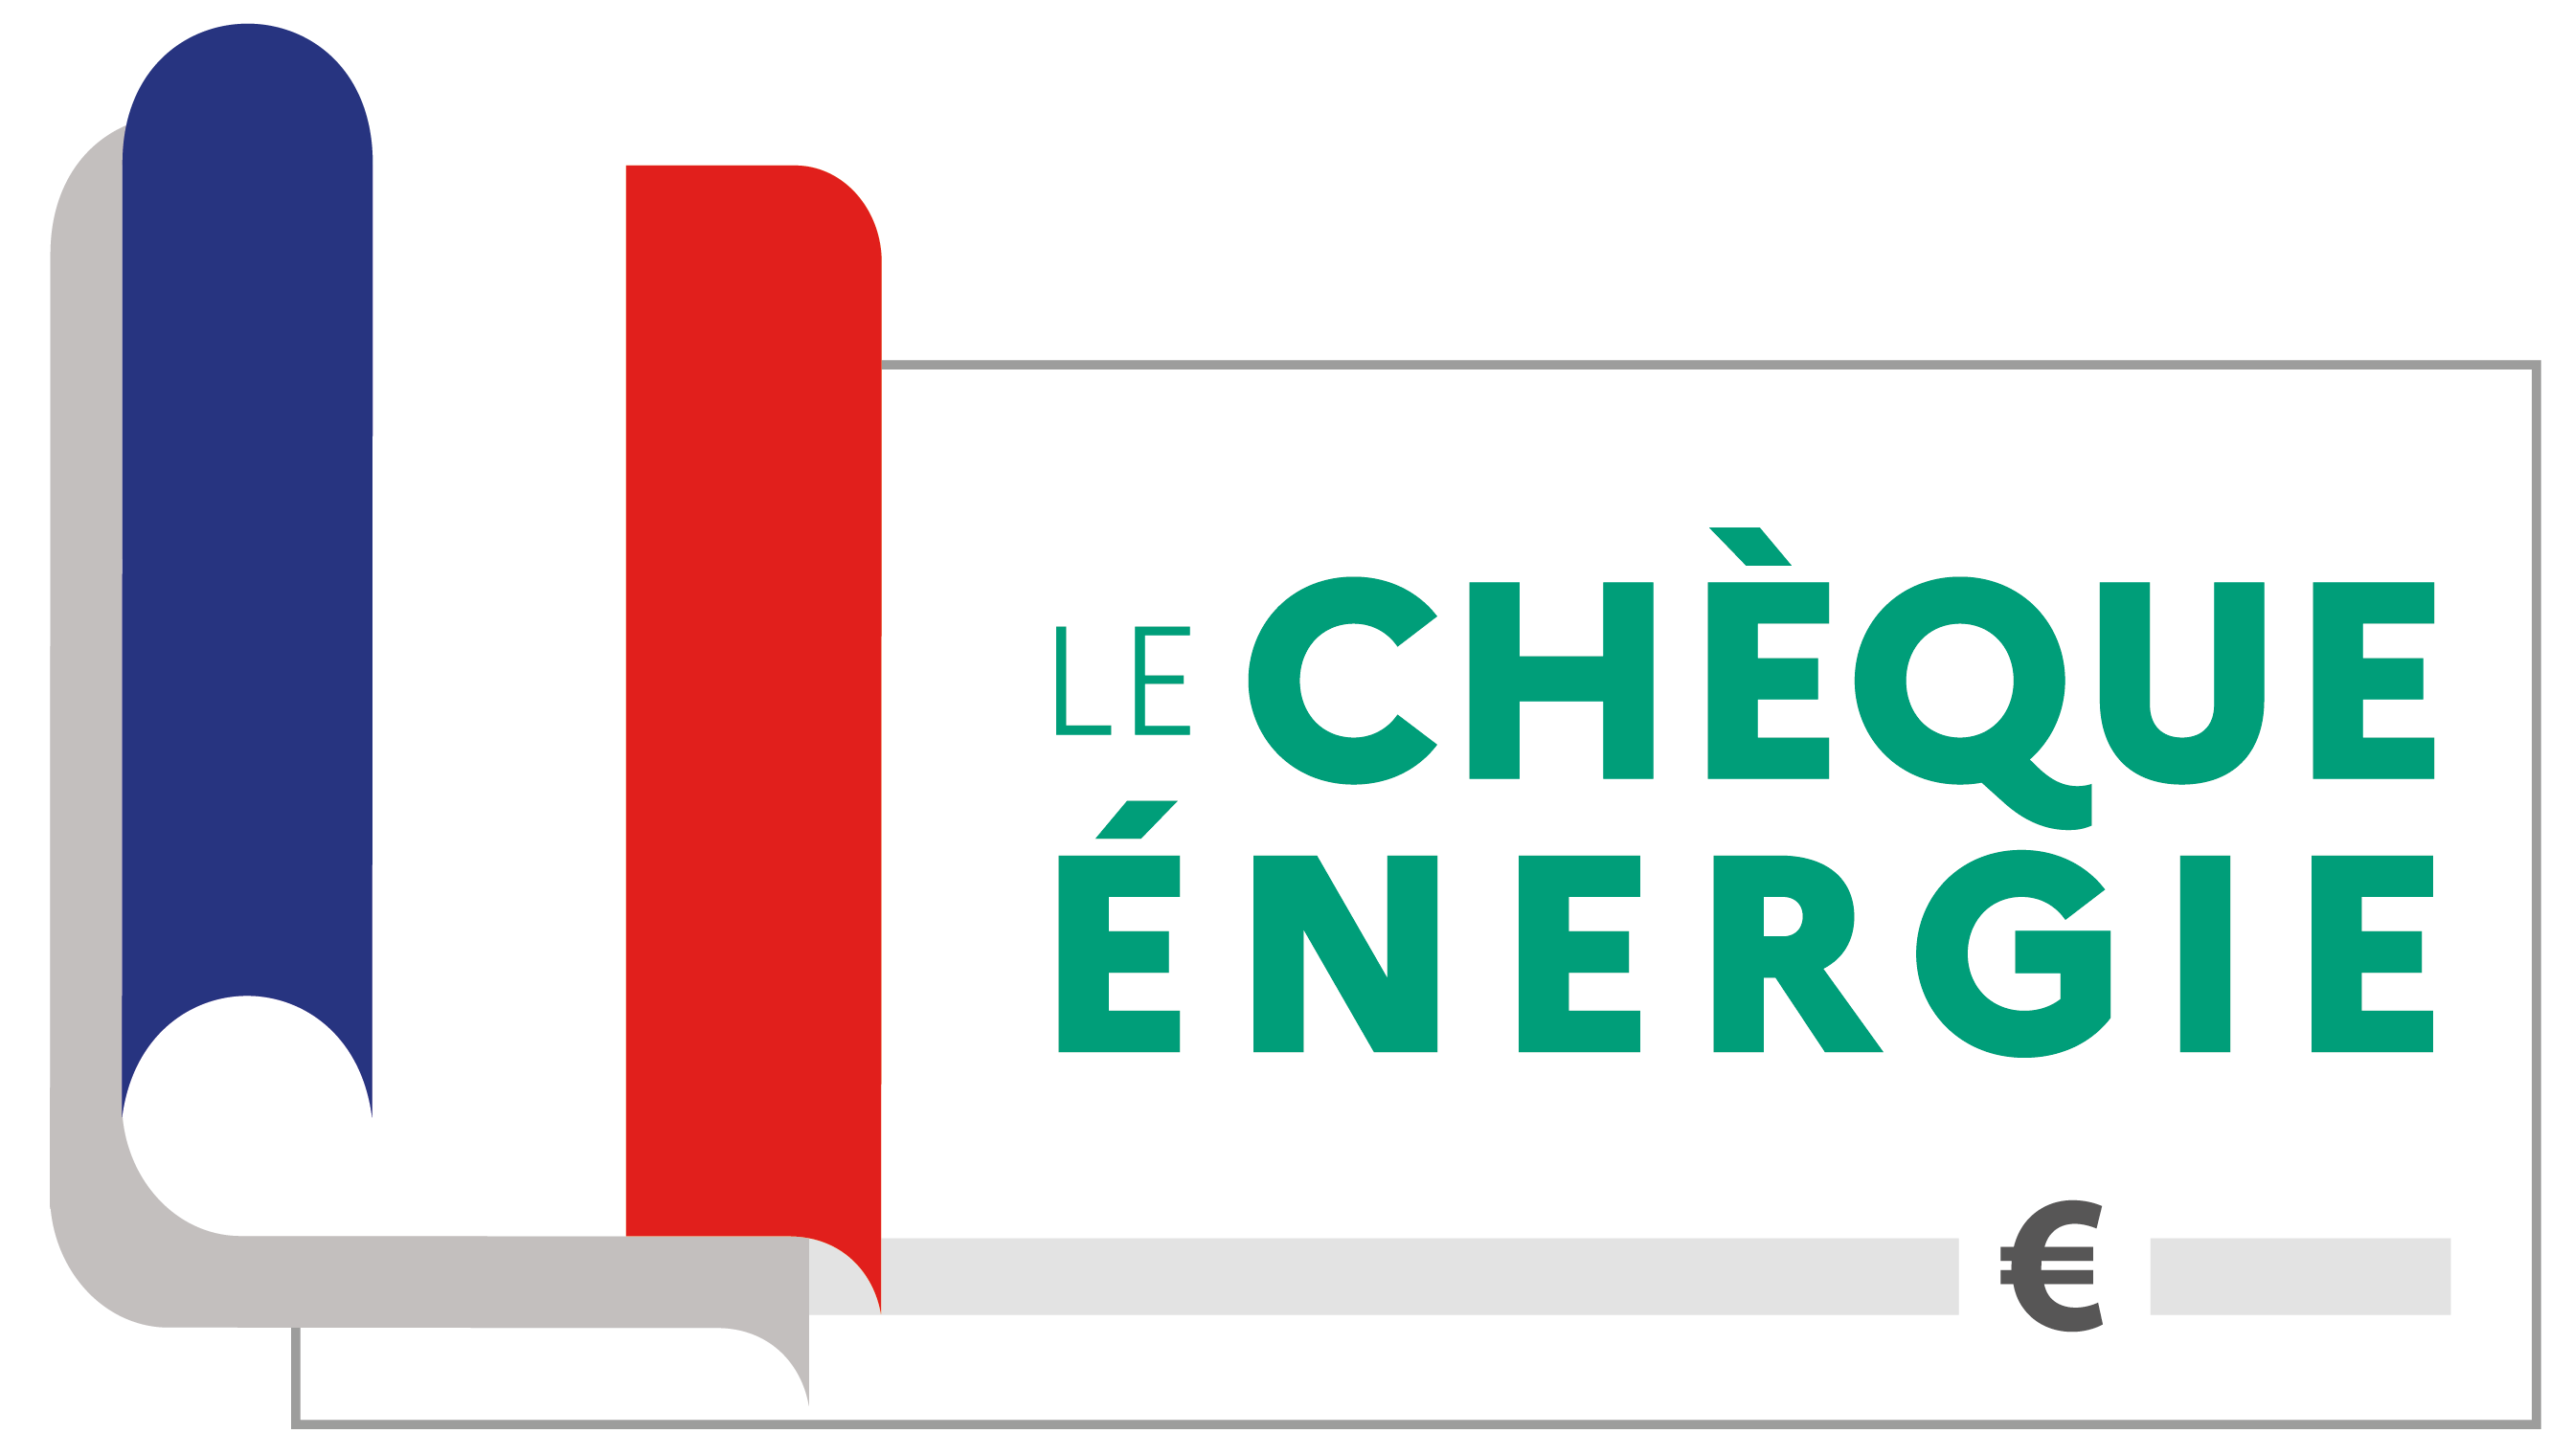 Chèque énergie 2023 - Campagne d'envoi des chèques énergie